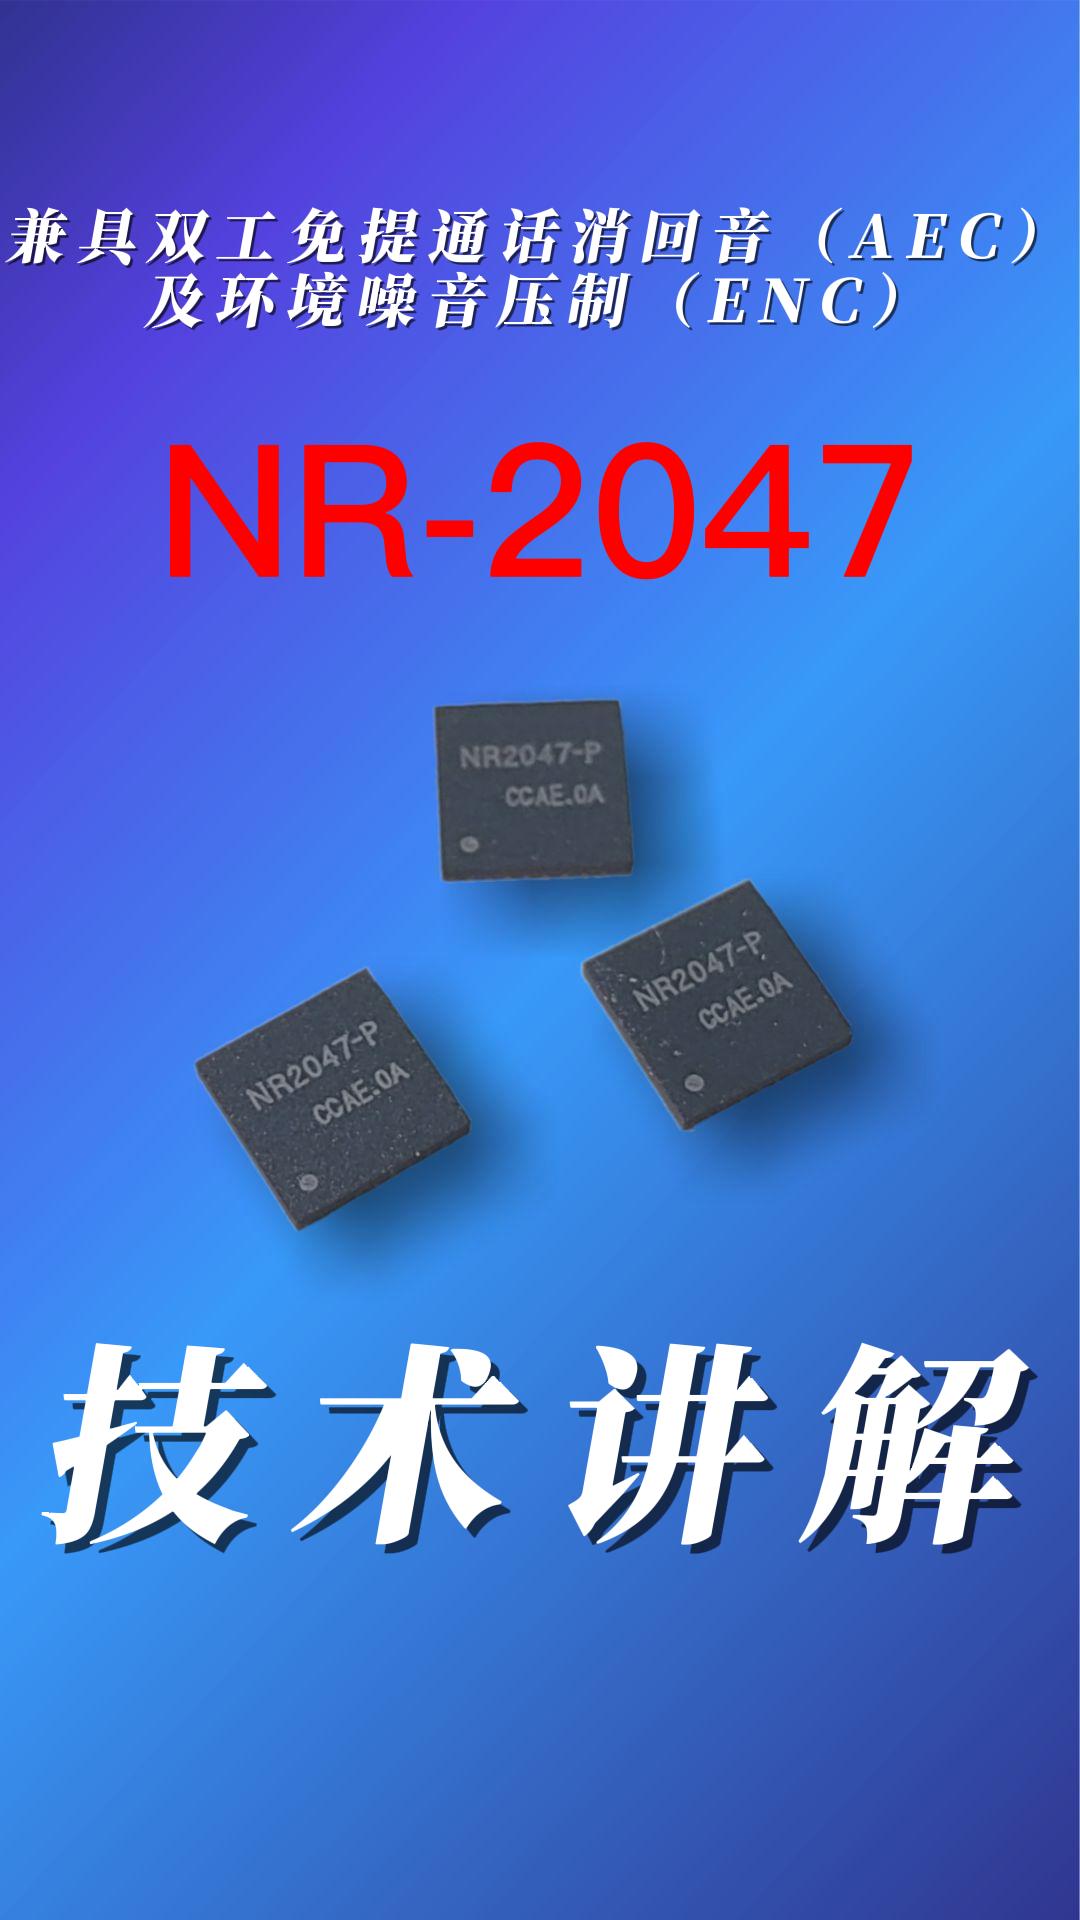 双麦降噪回音消除芯片NR-2047#产品方案 